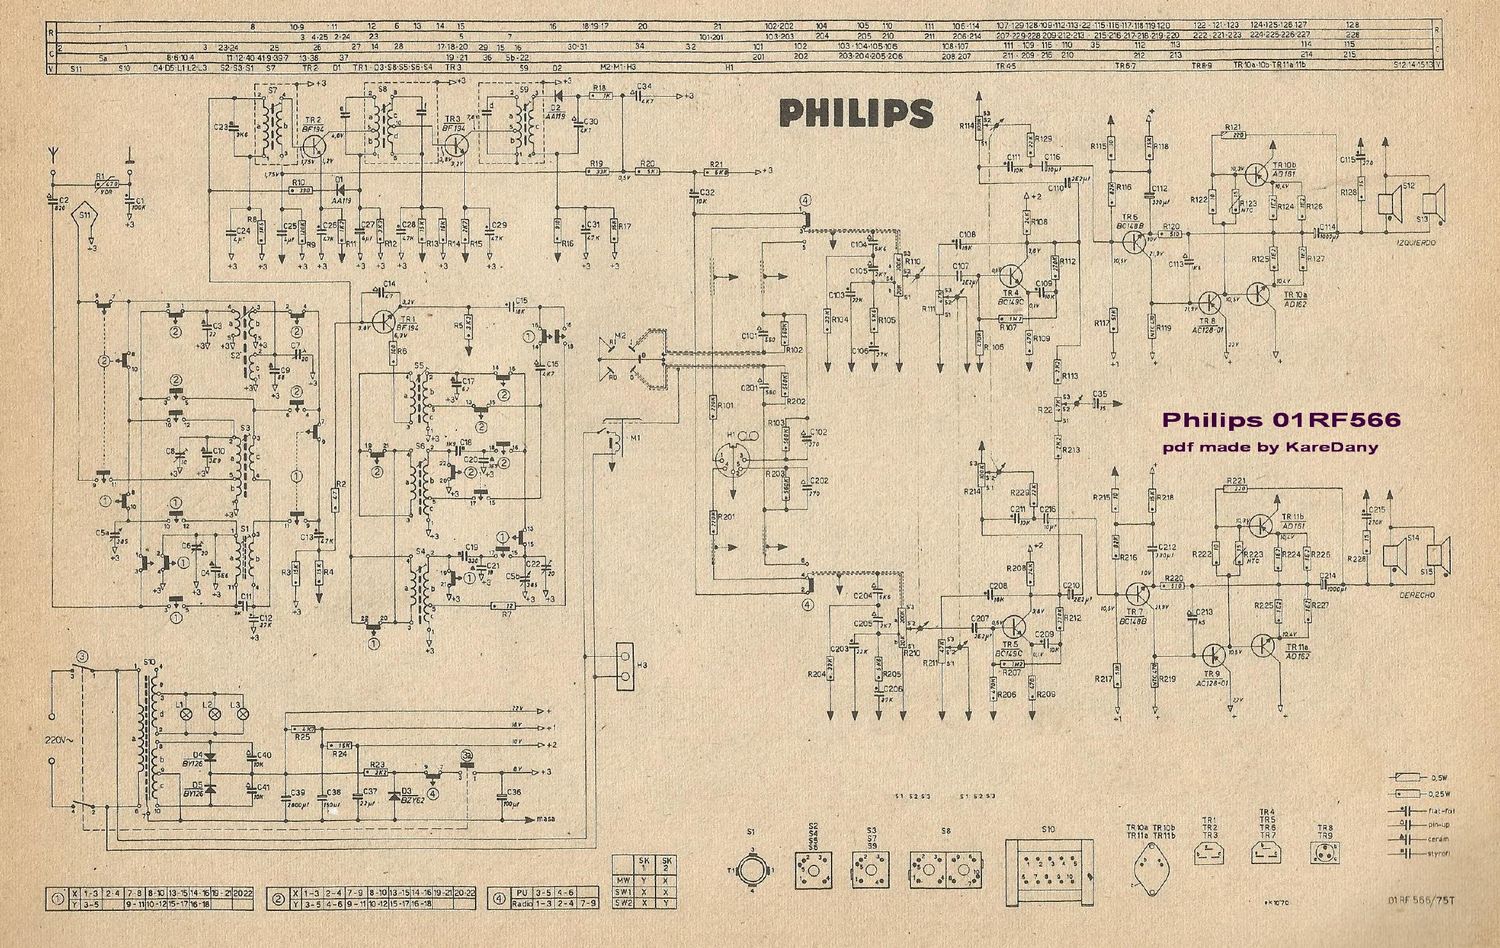 philips 01 rf 566 schematic